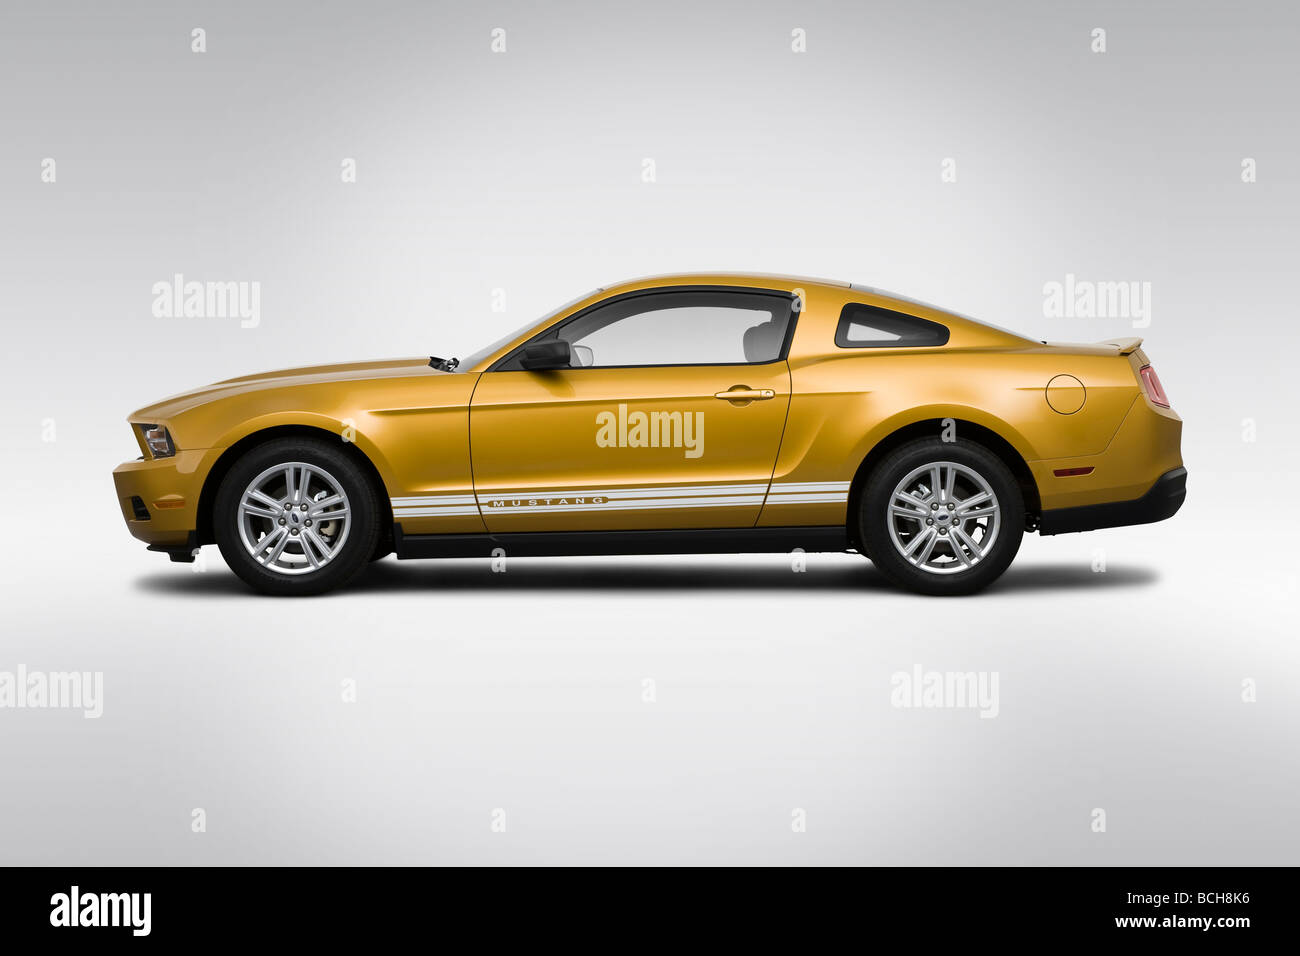 2010 Ford Mustang V6 dans l'or - Pilotes Portrait Banque D'Images